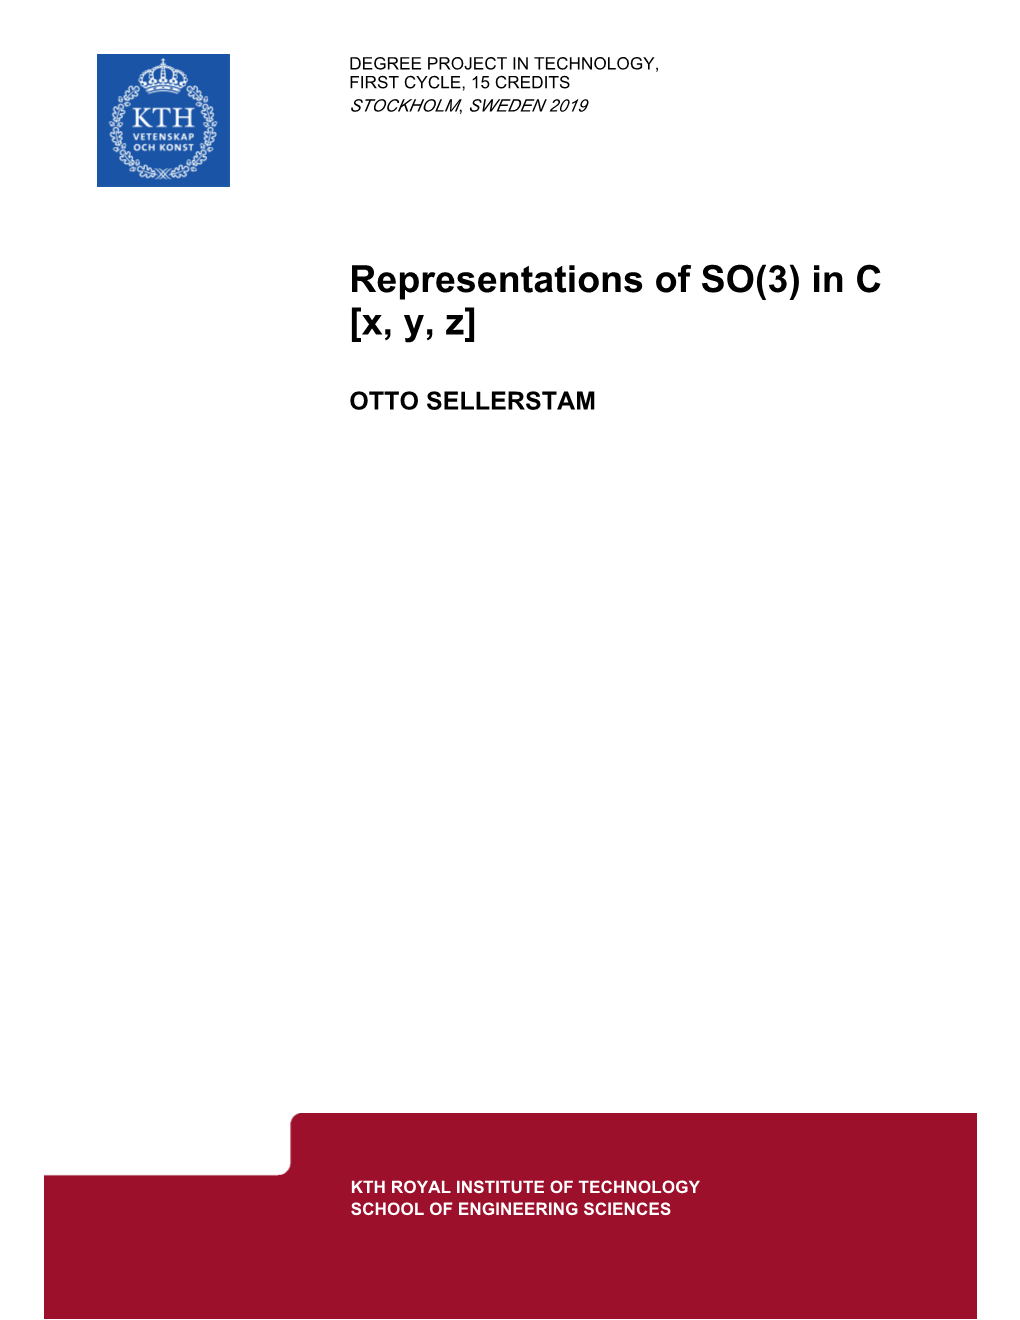 Representations of SO(3) in C [X, Y, Z]